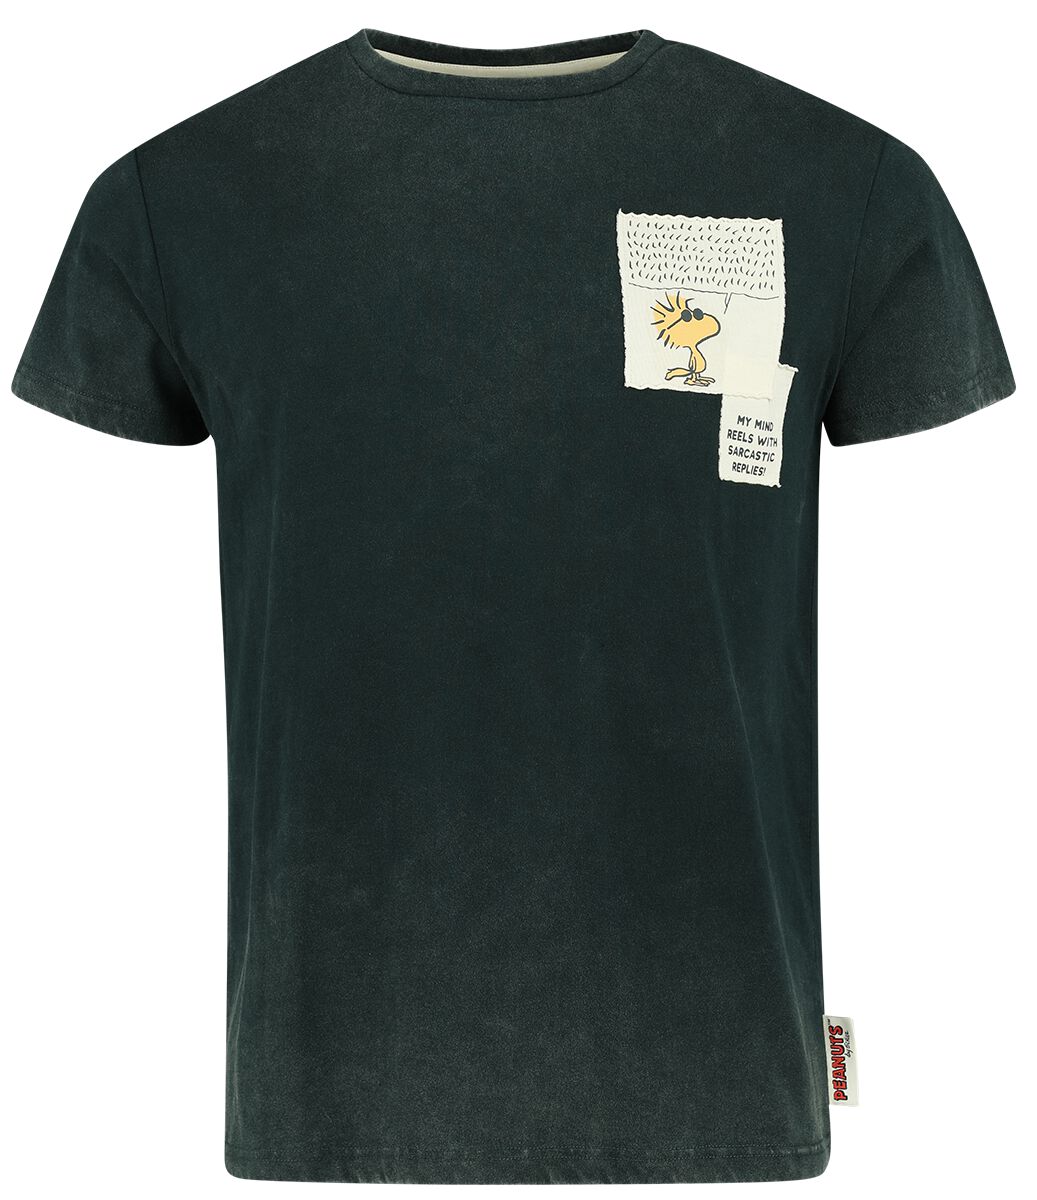 Peanuts T-Shirt - The Sarcasm Society - S bis XXL - für Männer - Größe S - dunkelgrün  - EMP exklusives Merchandise!